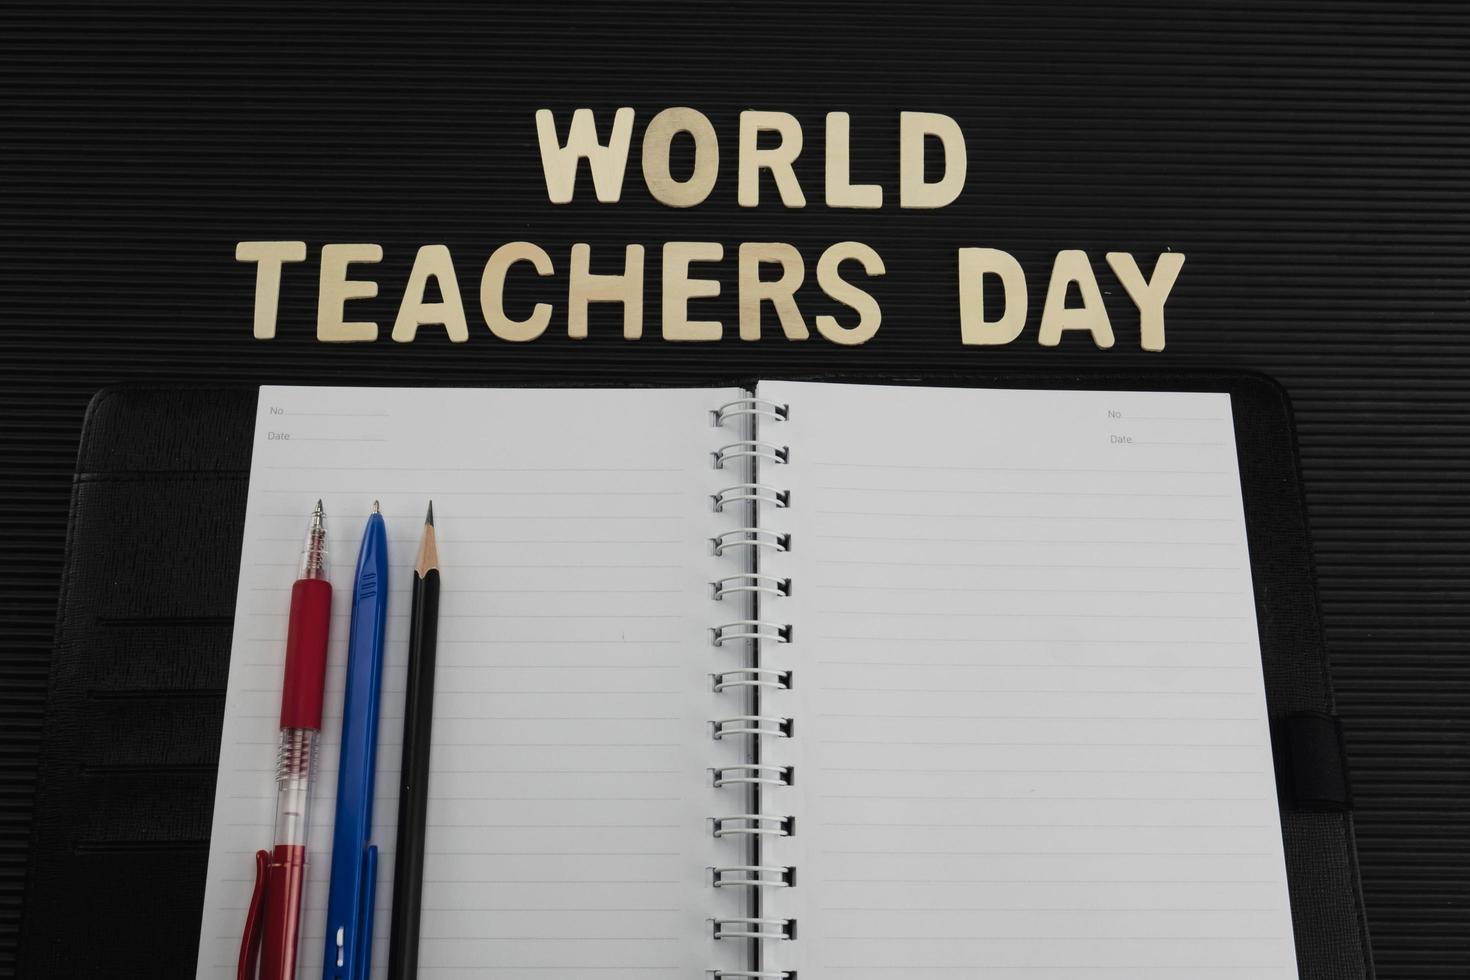 världslärarnas dag bakgrund - 5 oktober unesco världslärarnas dag firande koncept foto